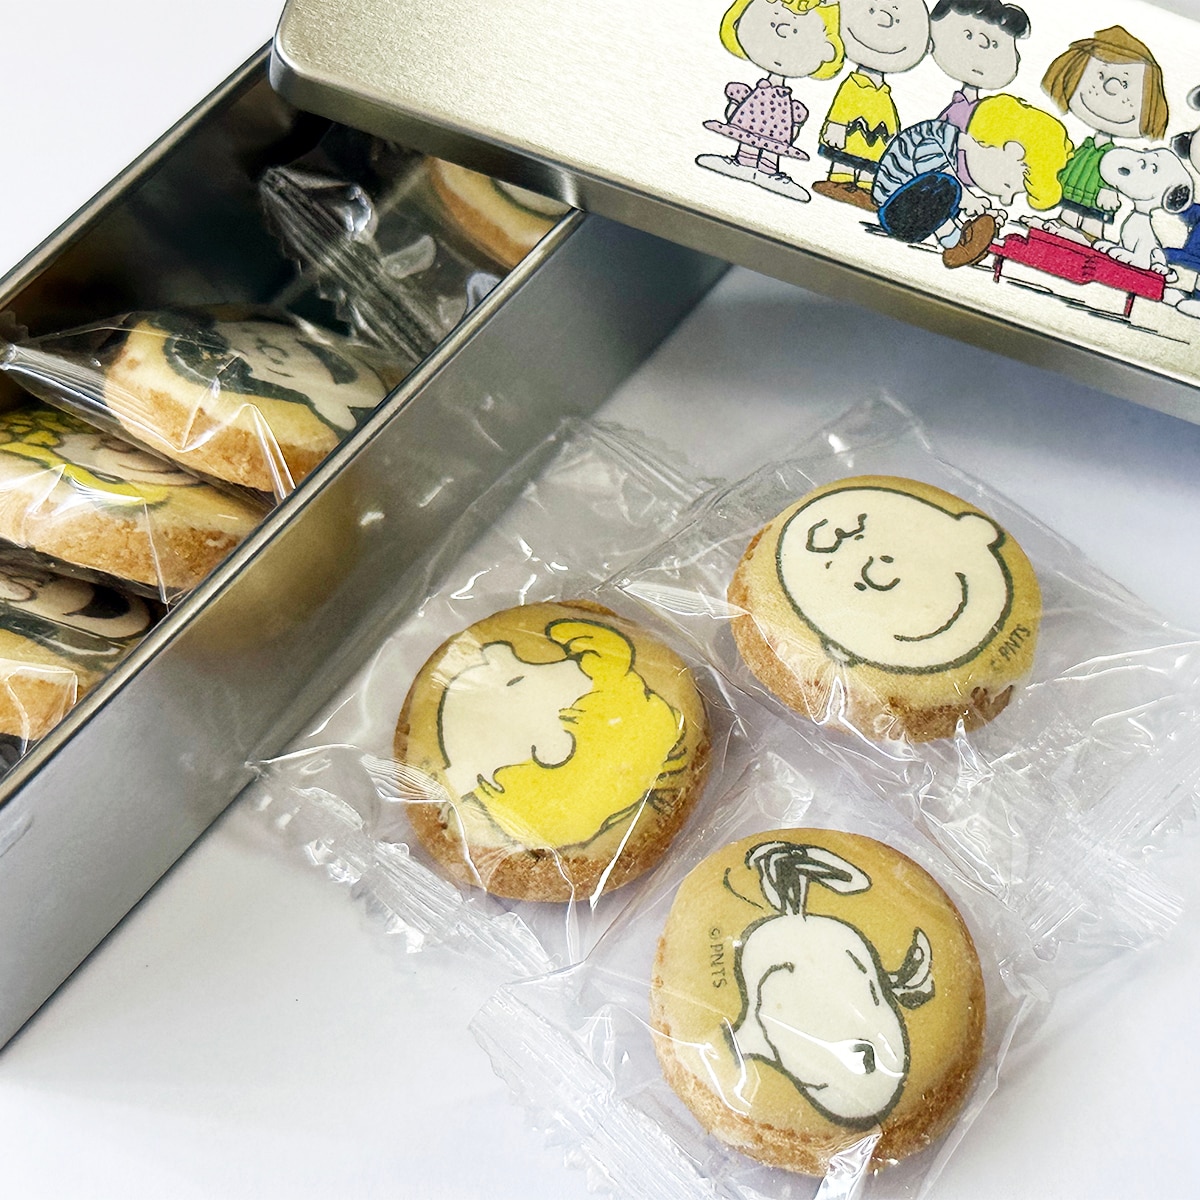 Snoopy macarons, Charlie Brown macarons, Woodstock Snoopy cookies